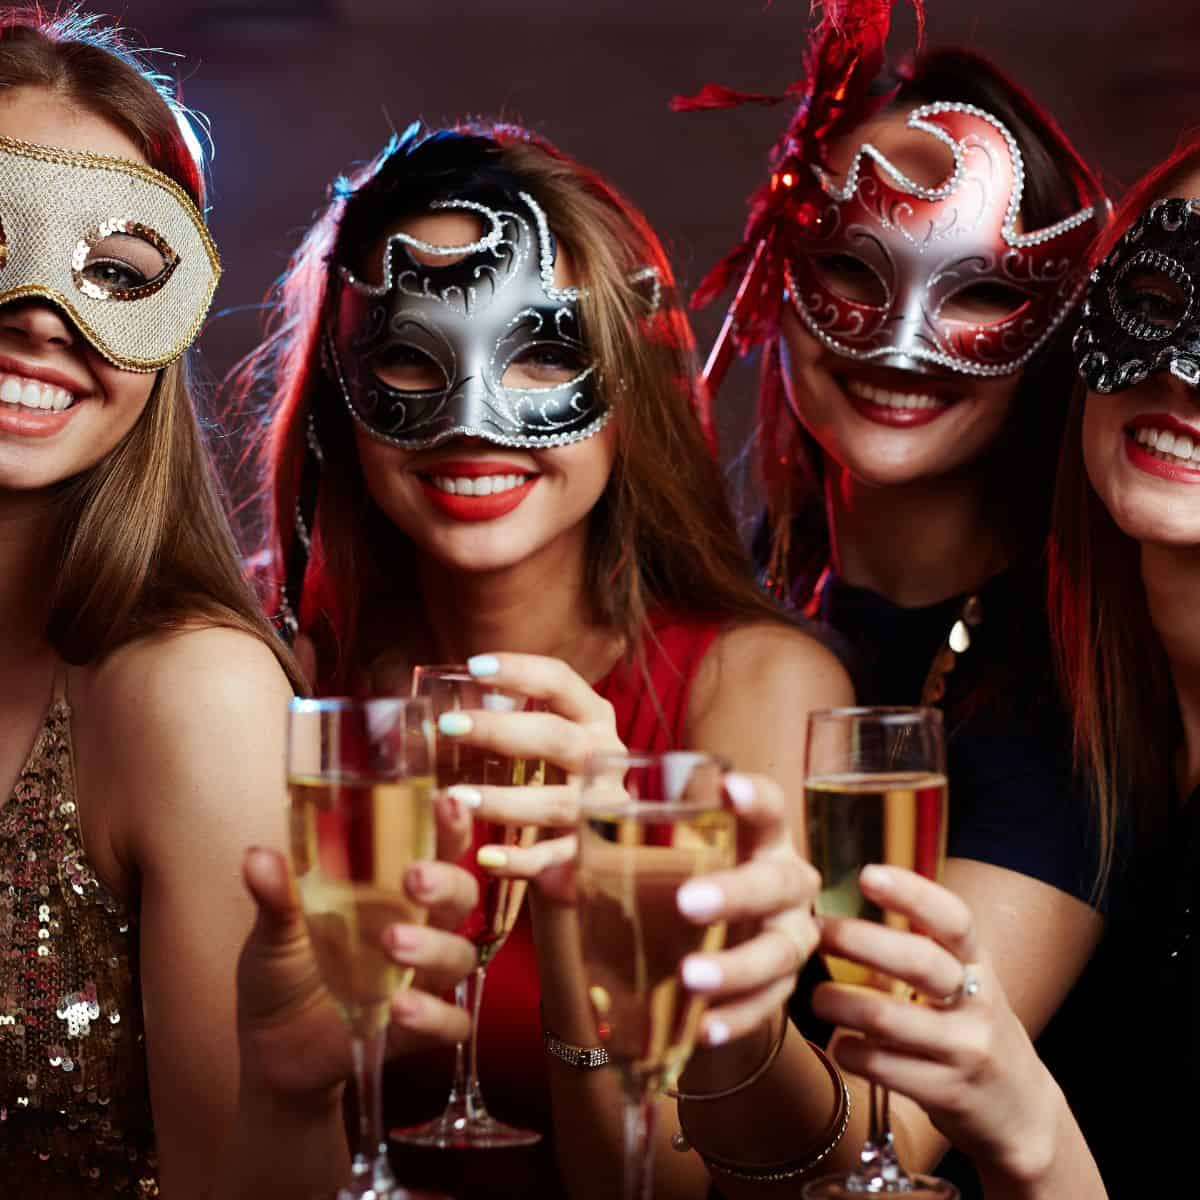 A Masquerade Ball Party - Party Ideas